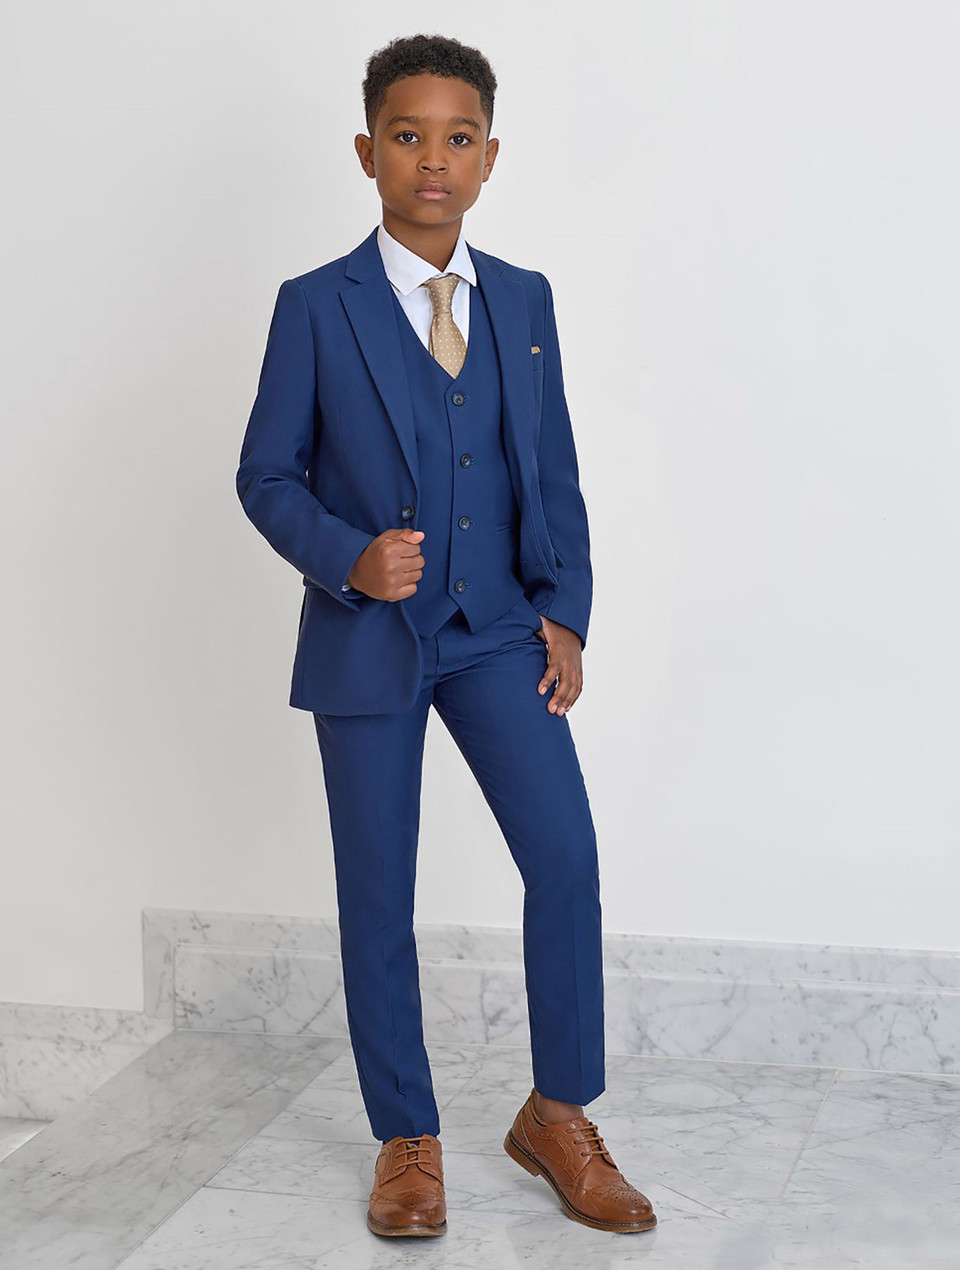 Boys Roco blue modern fit suit | Boys blue 3pc suit | Roco